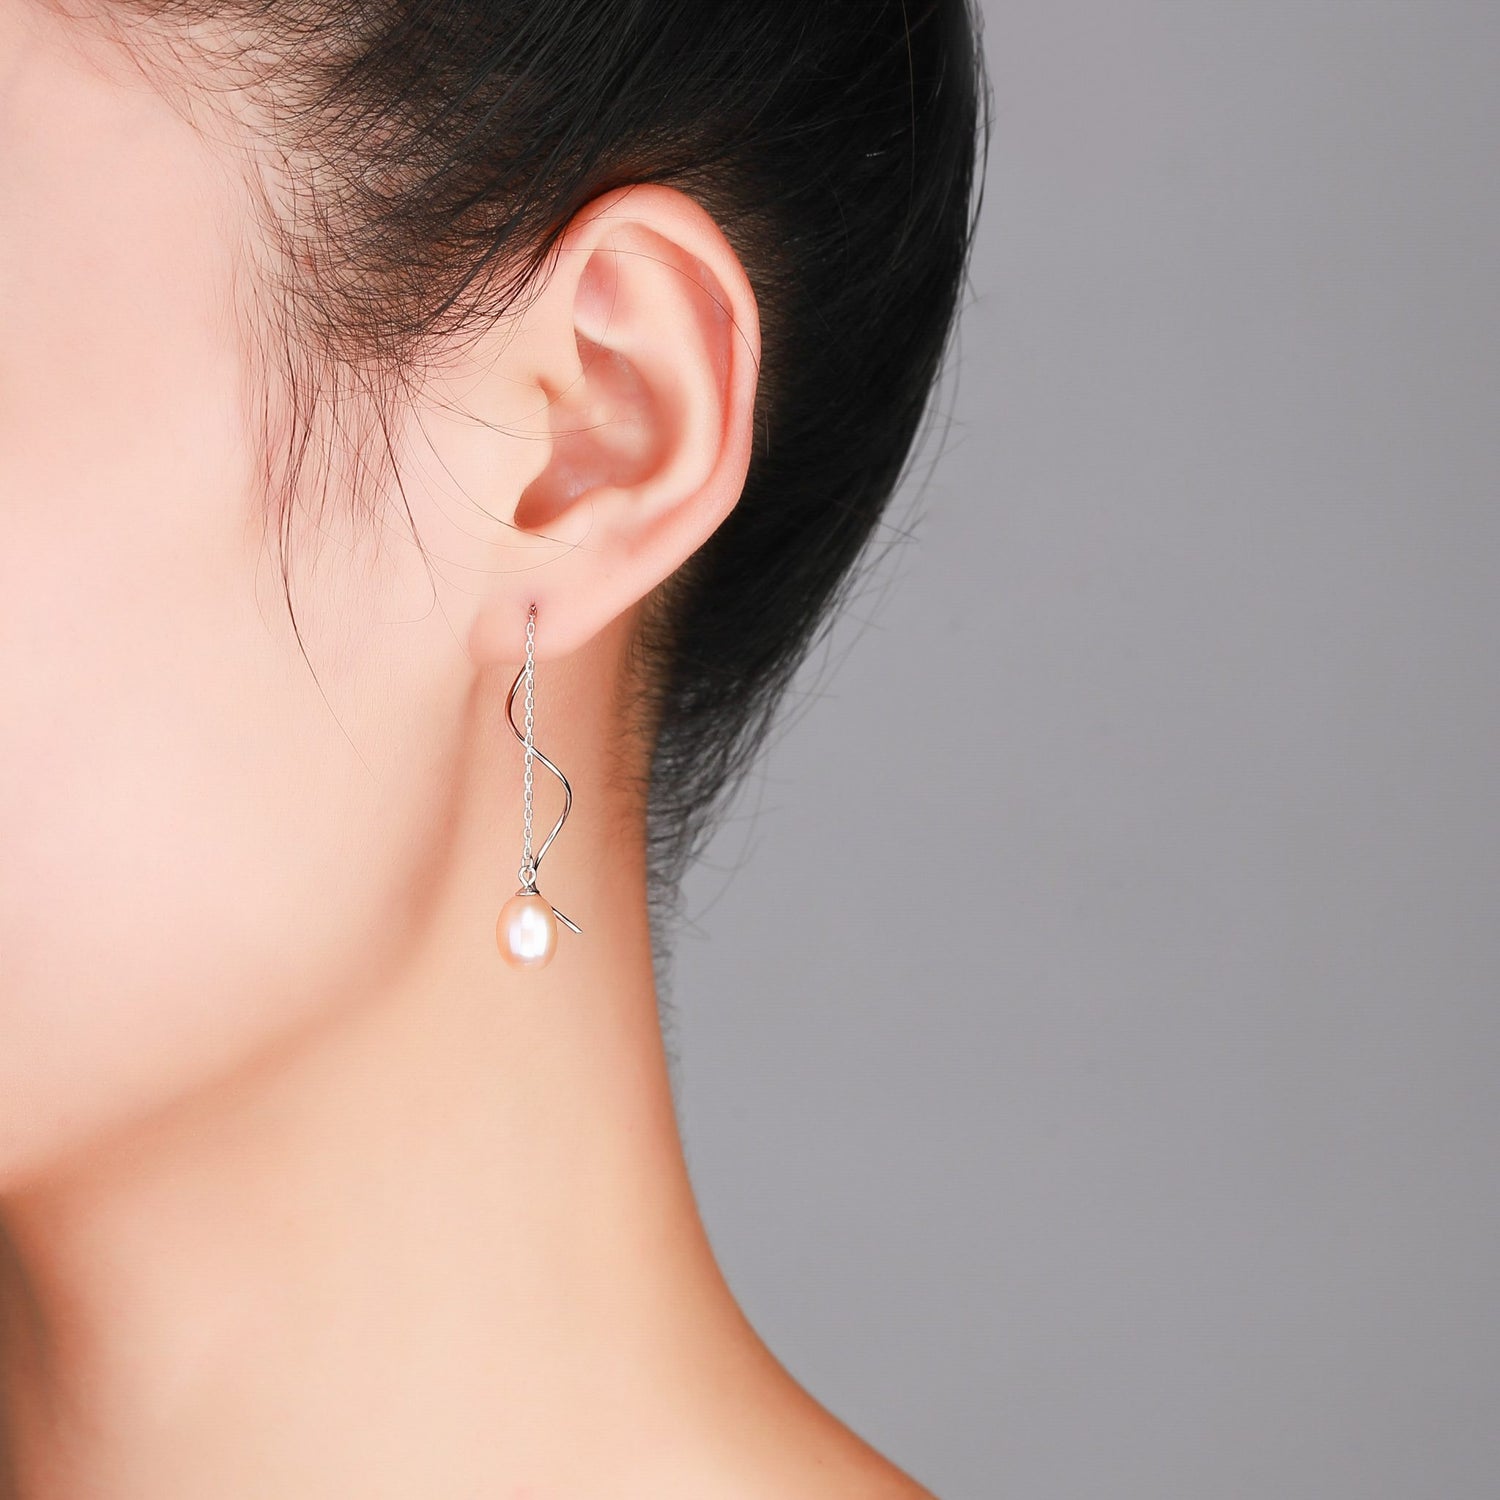 Elegant Pearl Wave Drop Earrings - Timeless Pearl